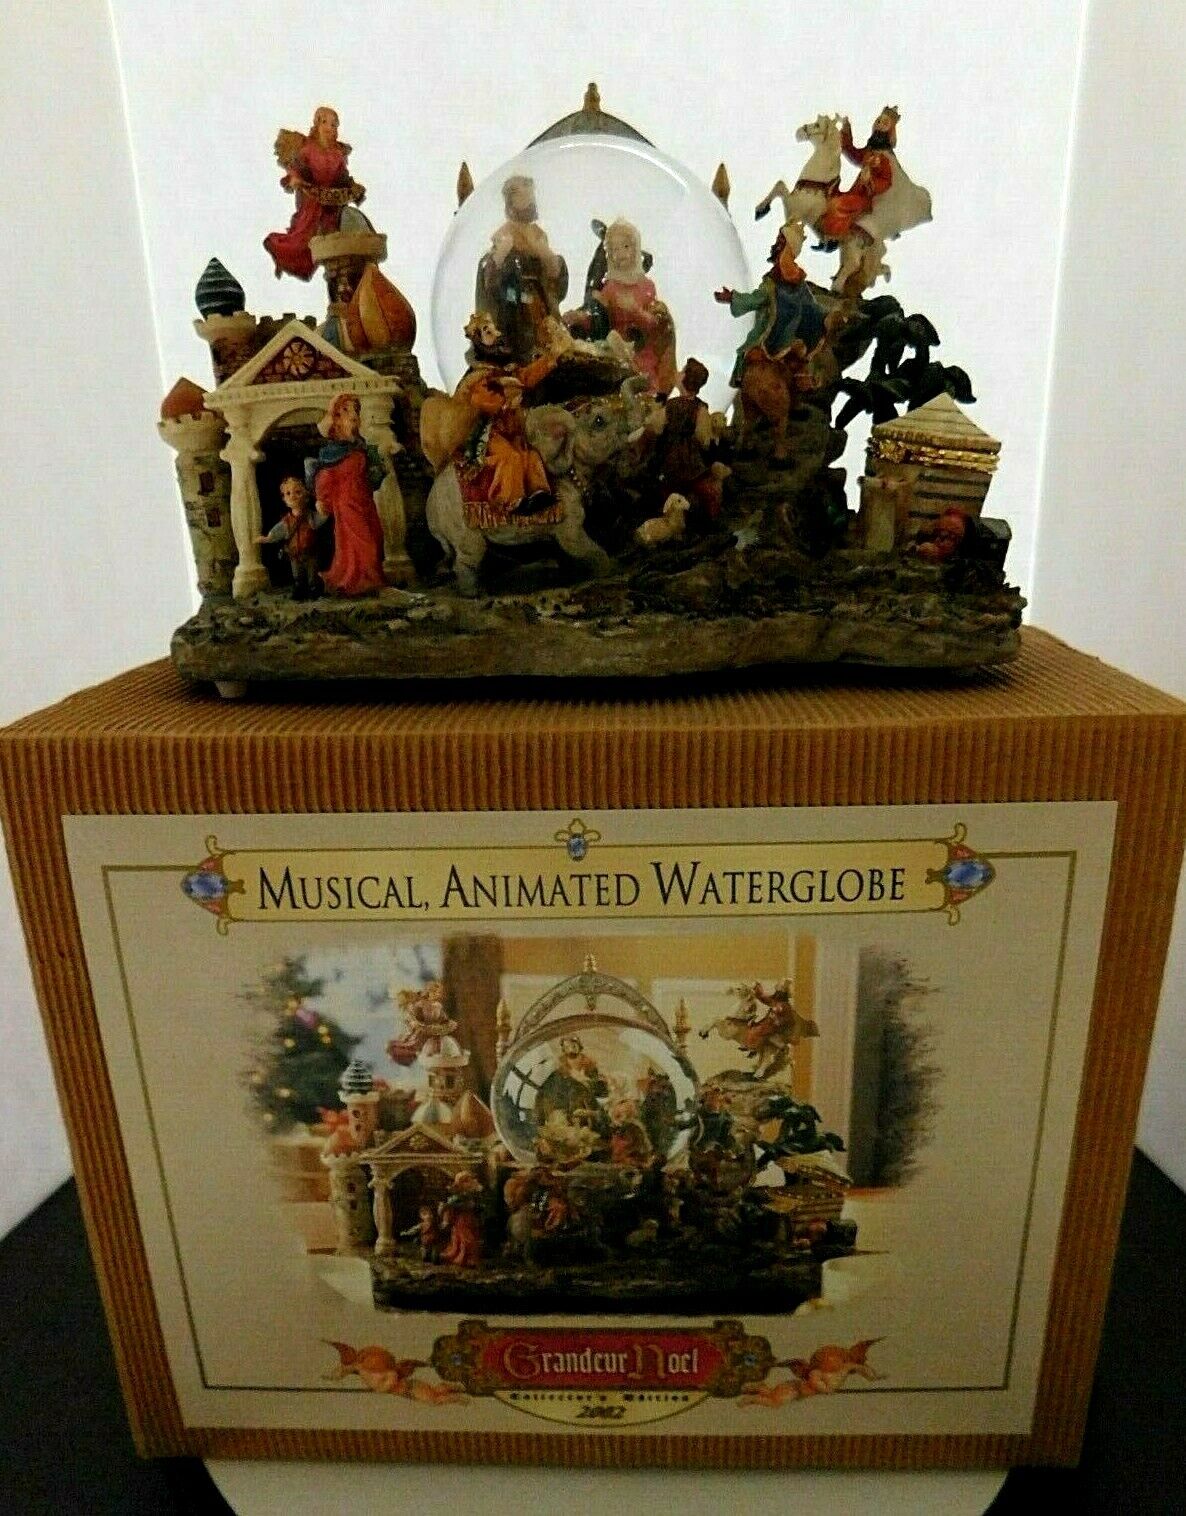 Rare 2002 Grandeur Noel Nativity Musical Animated Water Globe in Box